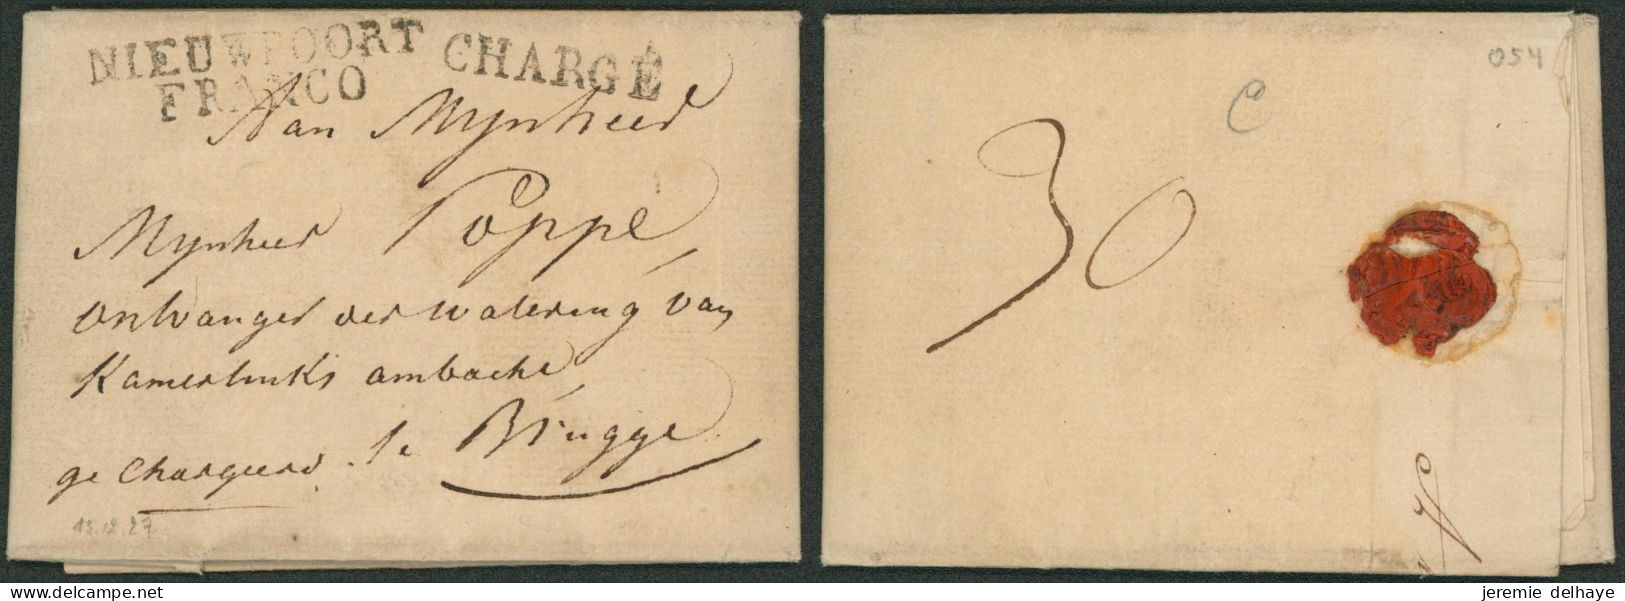 LAC Daté De Nieuport (1827) + Obl Linéaire Noir NIEUWPOORT / FRANCO (R) & Chargé > Brugge. Combinaison !! - 1815-1830 (Période Hollandaise)